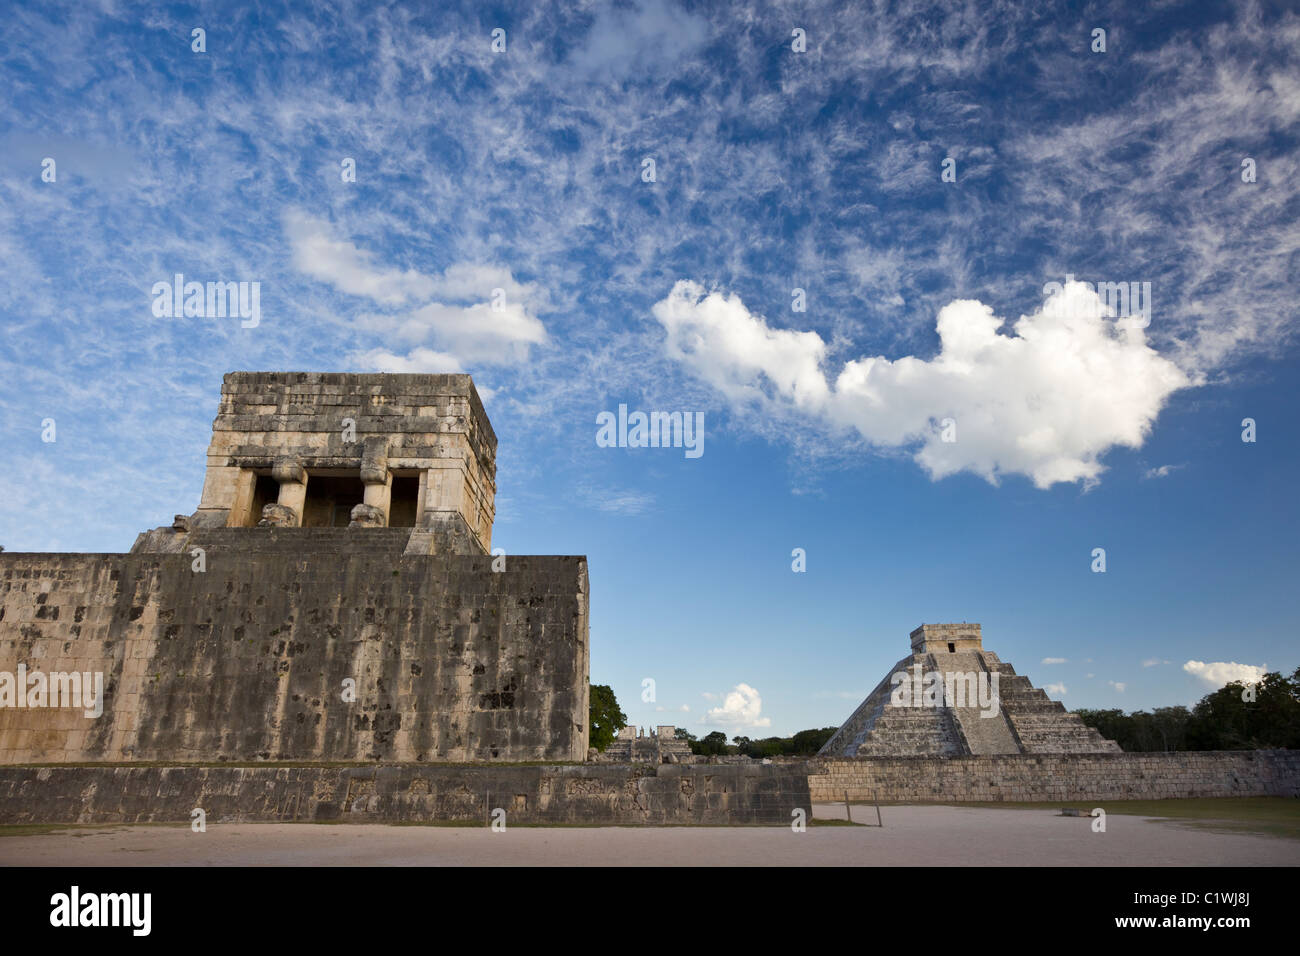 Campo per il gioco della palla a Chichen Itza con la Piramide di Kukulkan o "El Castillo" in background, la penisola dello Yucatan, Mexco. Foto Stock